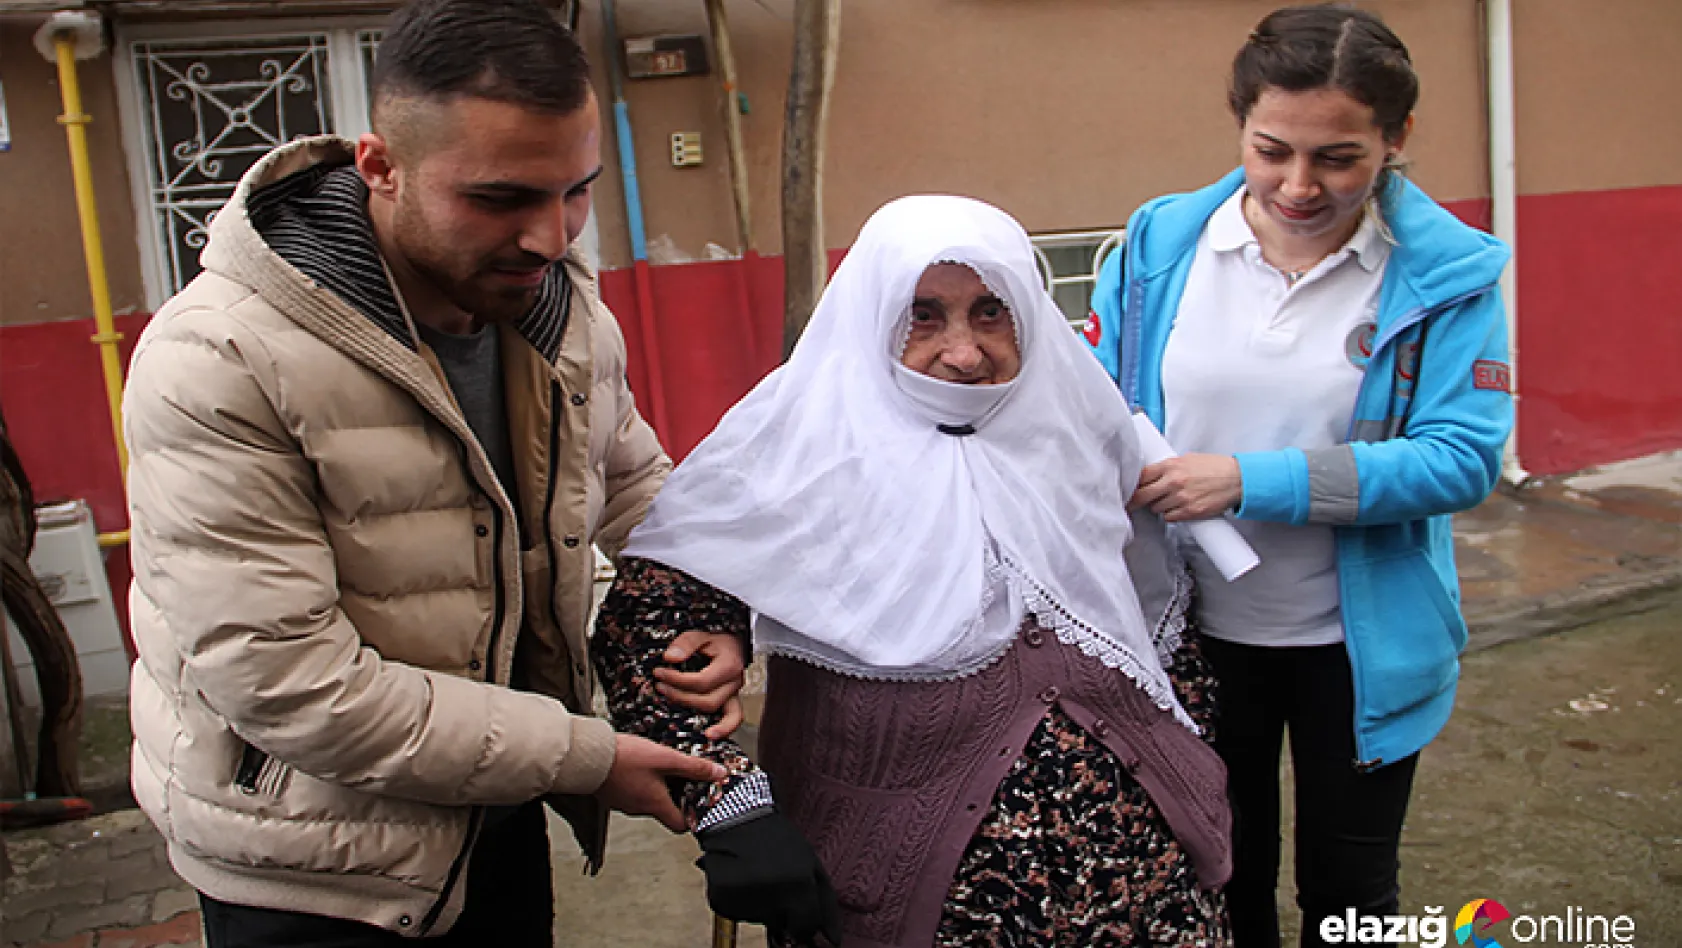 Elazığ'da hasta ve engelliler sandığa taşındı